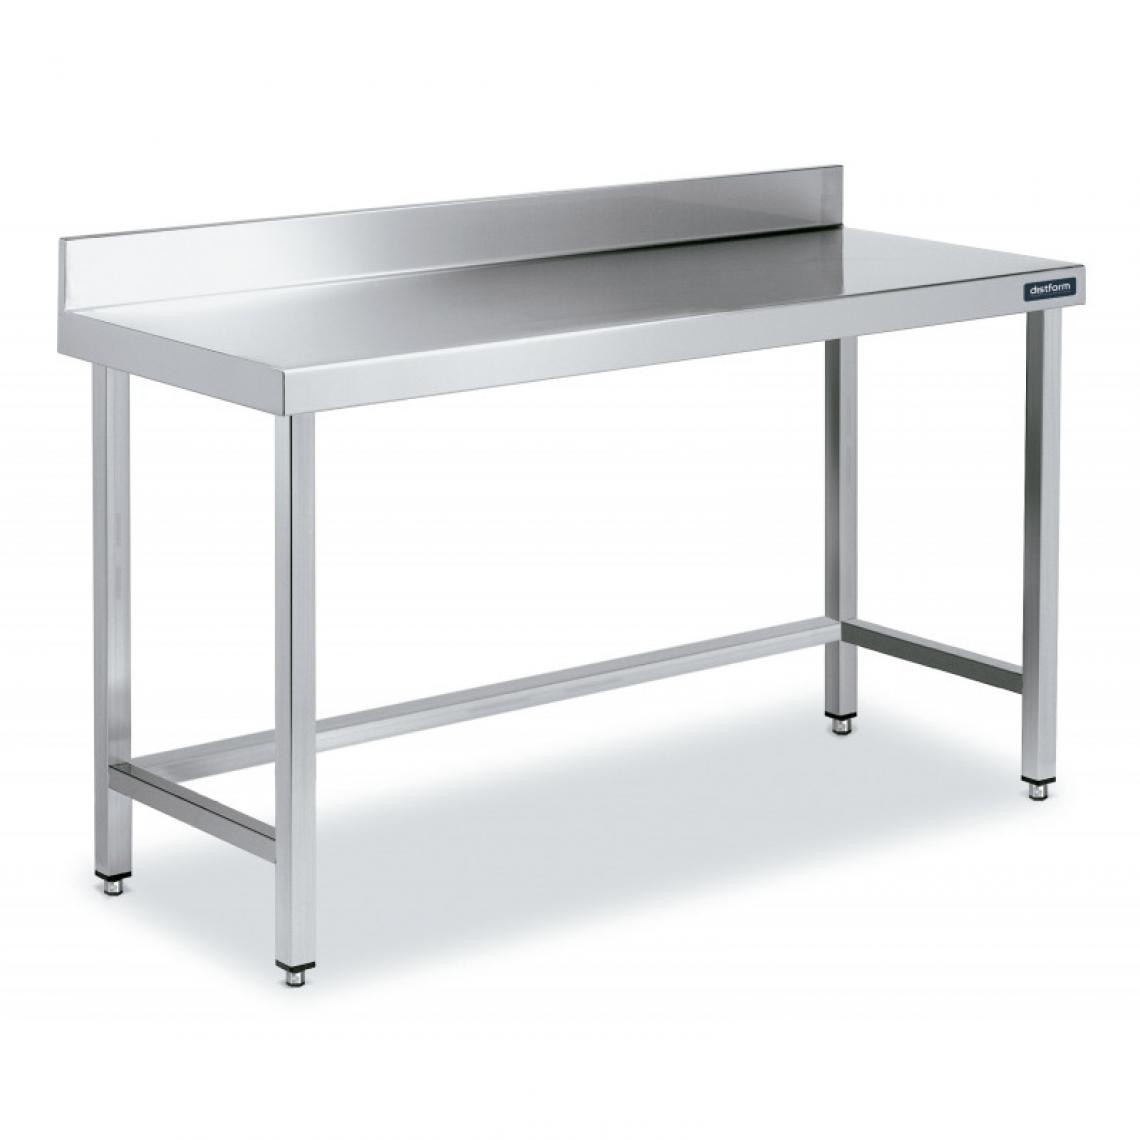 DISTFORM - Table Adossée en Inox avec Renforts Profondeur 600 mm - Distform - Acier inoxydable1300x600 - Tables à manger